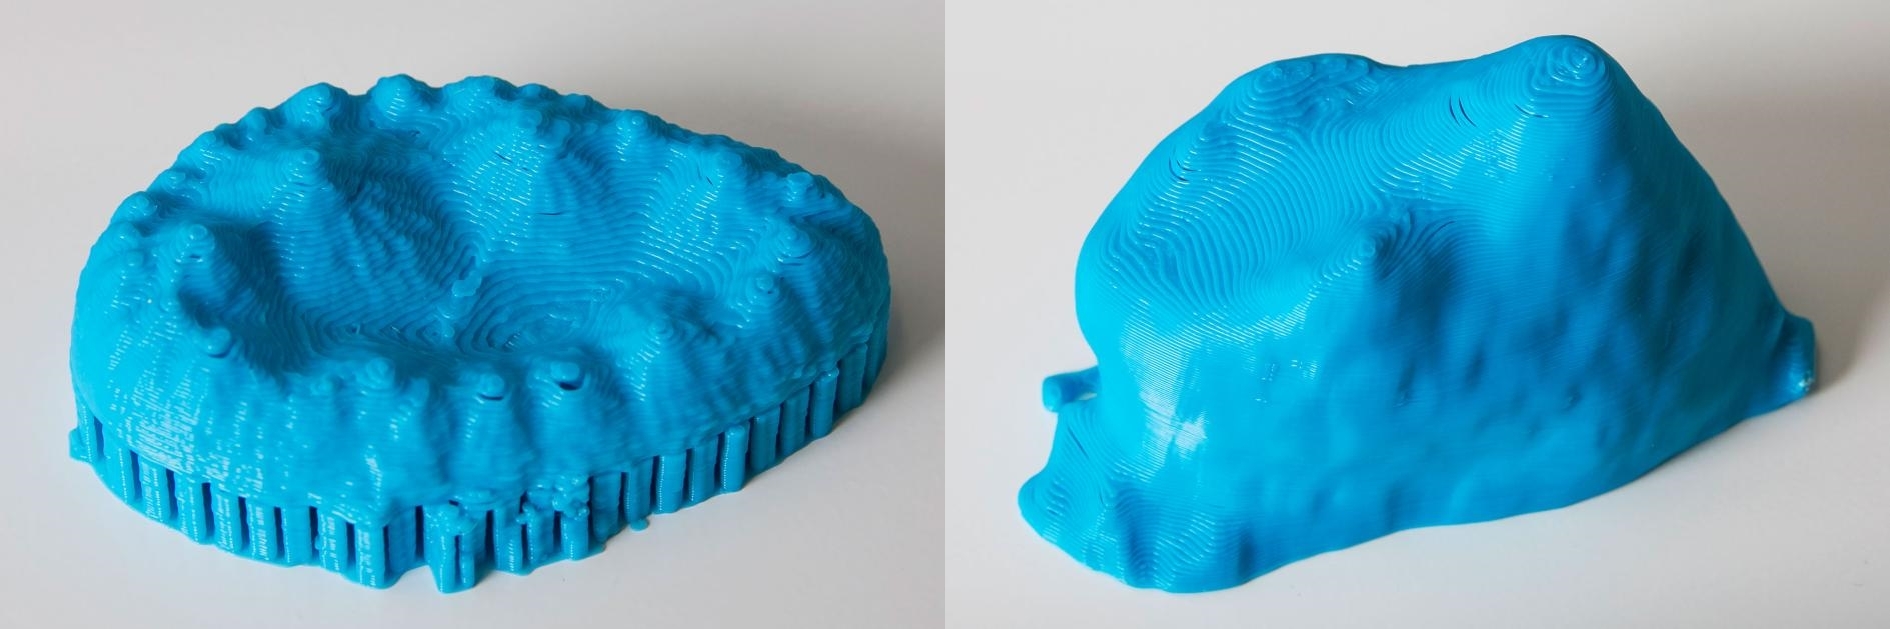 這對3D列印模型展示出兩種已滅絕鱷魚表親的牙齒複雜形狀。這些形狀顯示這些久遠以前的鱷魚吃素。 PHOTOGRAPH BY MARK JOHNSTON, NHMU